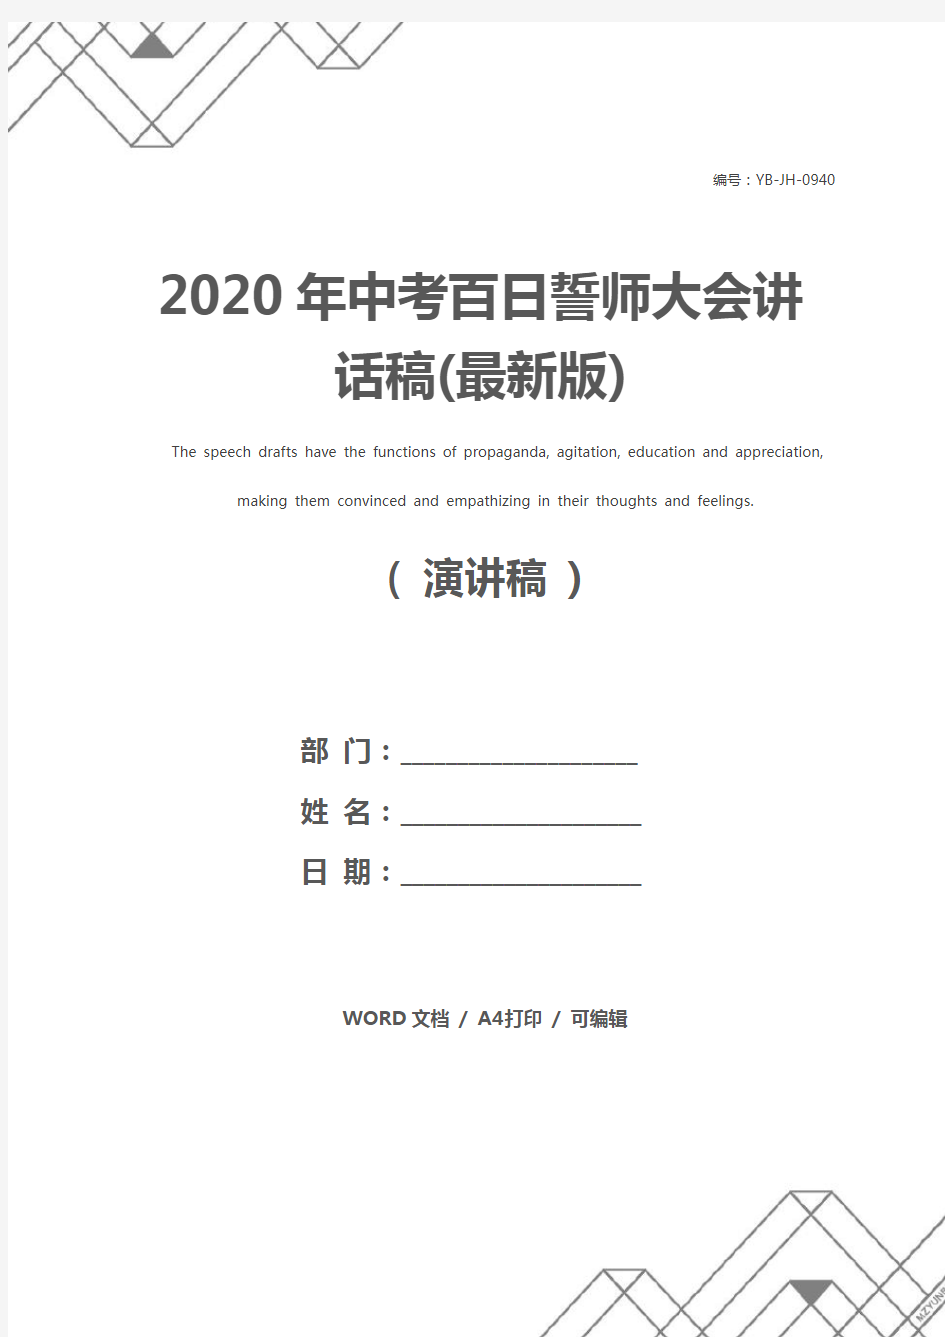 2020年中考百日誓师大会讲话稿(最新版)